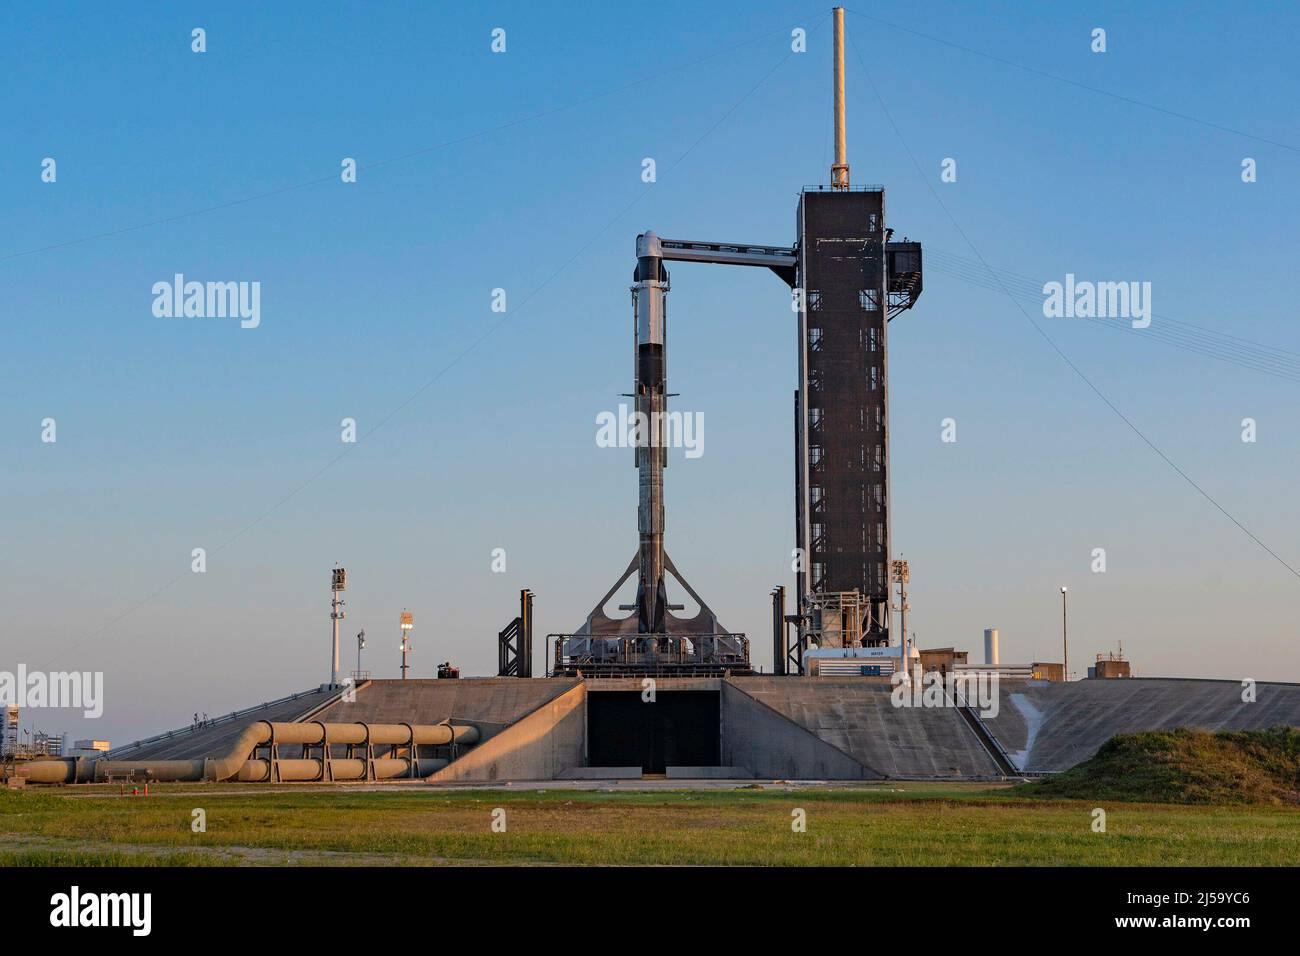 Die Rakete SpaceX Falcon 9 ist senkrecht, der companyâs Crew Dragon steht oben für die Mission NASAâs SpaceX Crew-4 auf dem Launch Pad 39A im NASAâs Kennedy Space Center in Florida am 19. April 2022. Die NASA-Astronauten Kjell Lindgren, Bob Hines und Jessica Watson werden zusammen mit der ESA-Astronautin Samantha Cristoforetti am 23. April 2022 auf der Falcon 9 an Bord von Dragon, von der Crew-4-Crew unter dem Namen Freedom, zur Internationalen Raumstation starten. Die Markteinführung ist für 5:26:00 Uhr EDT ab Pad 39A geplant. Die Astronauten werden wissenschaftliche Forschungen auf Gebieten wie der Materialwissenschaft durchführen, so er Stockfoto